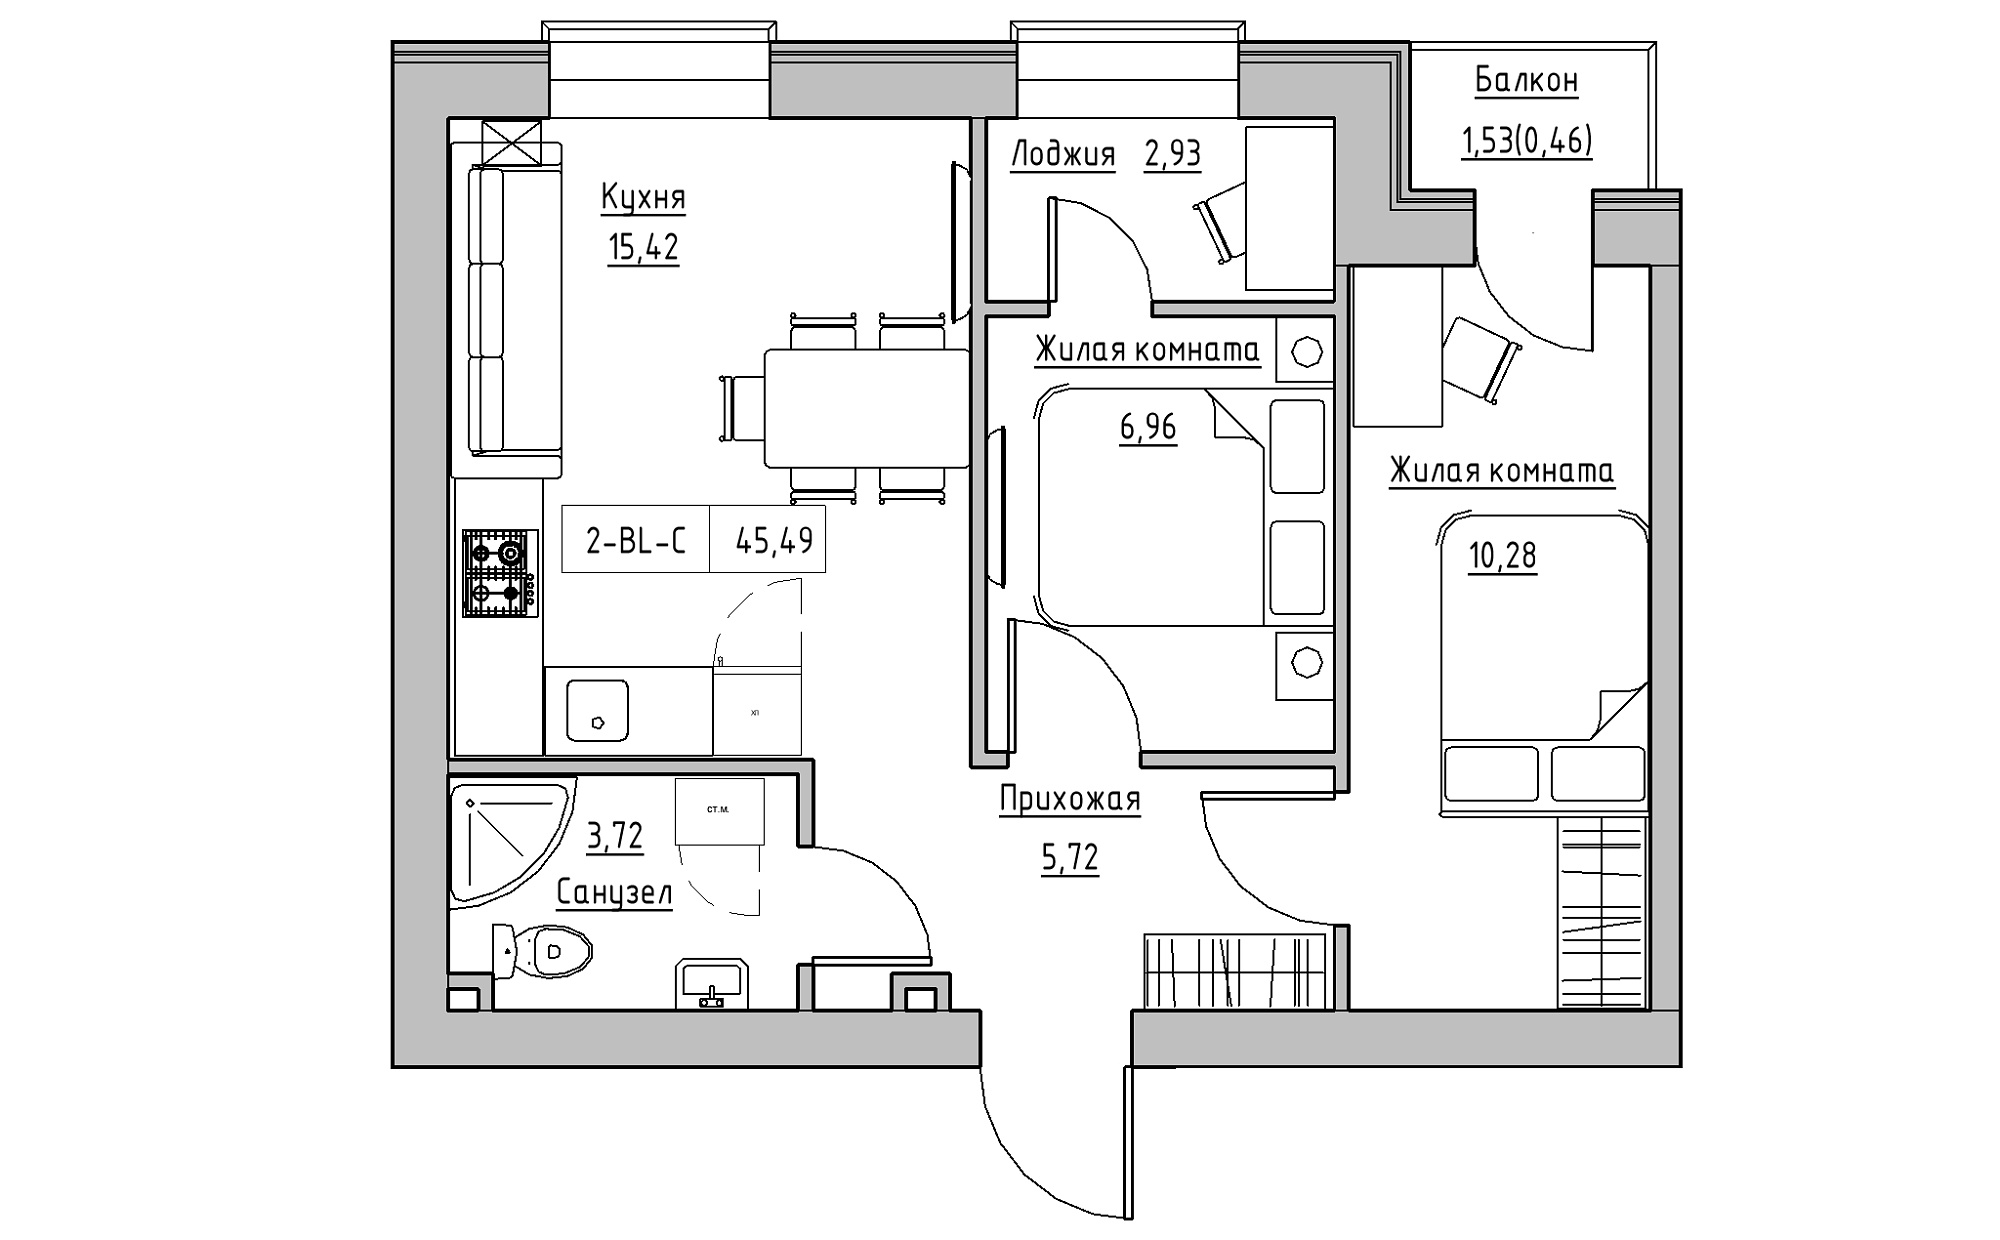 Планировка 2-к квартира площей 45.49м2, KS-022-02/0008.